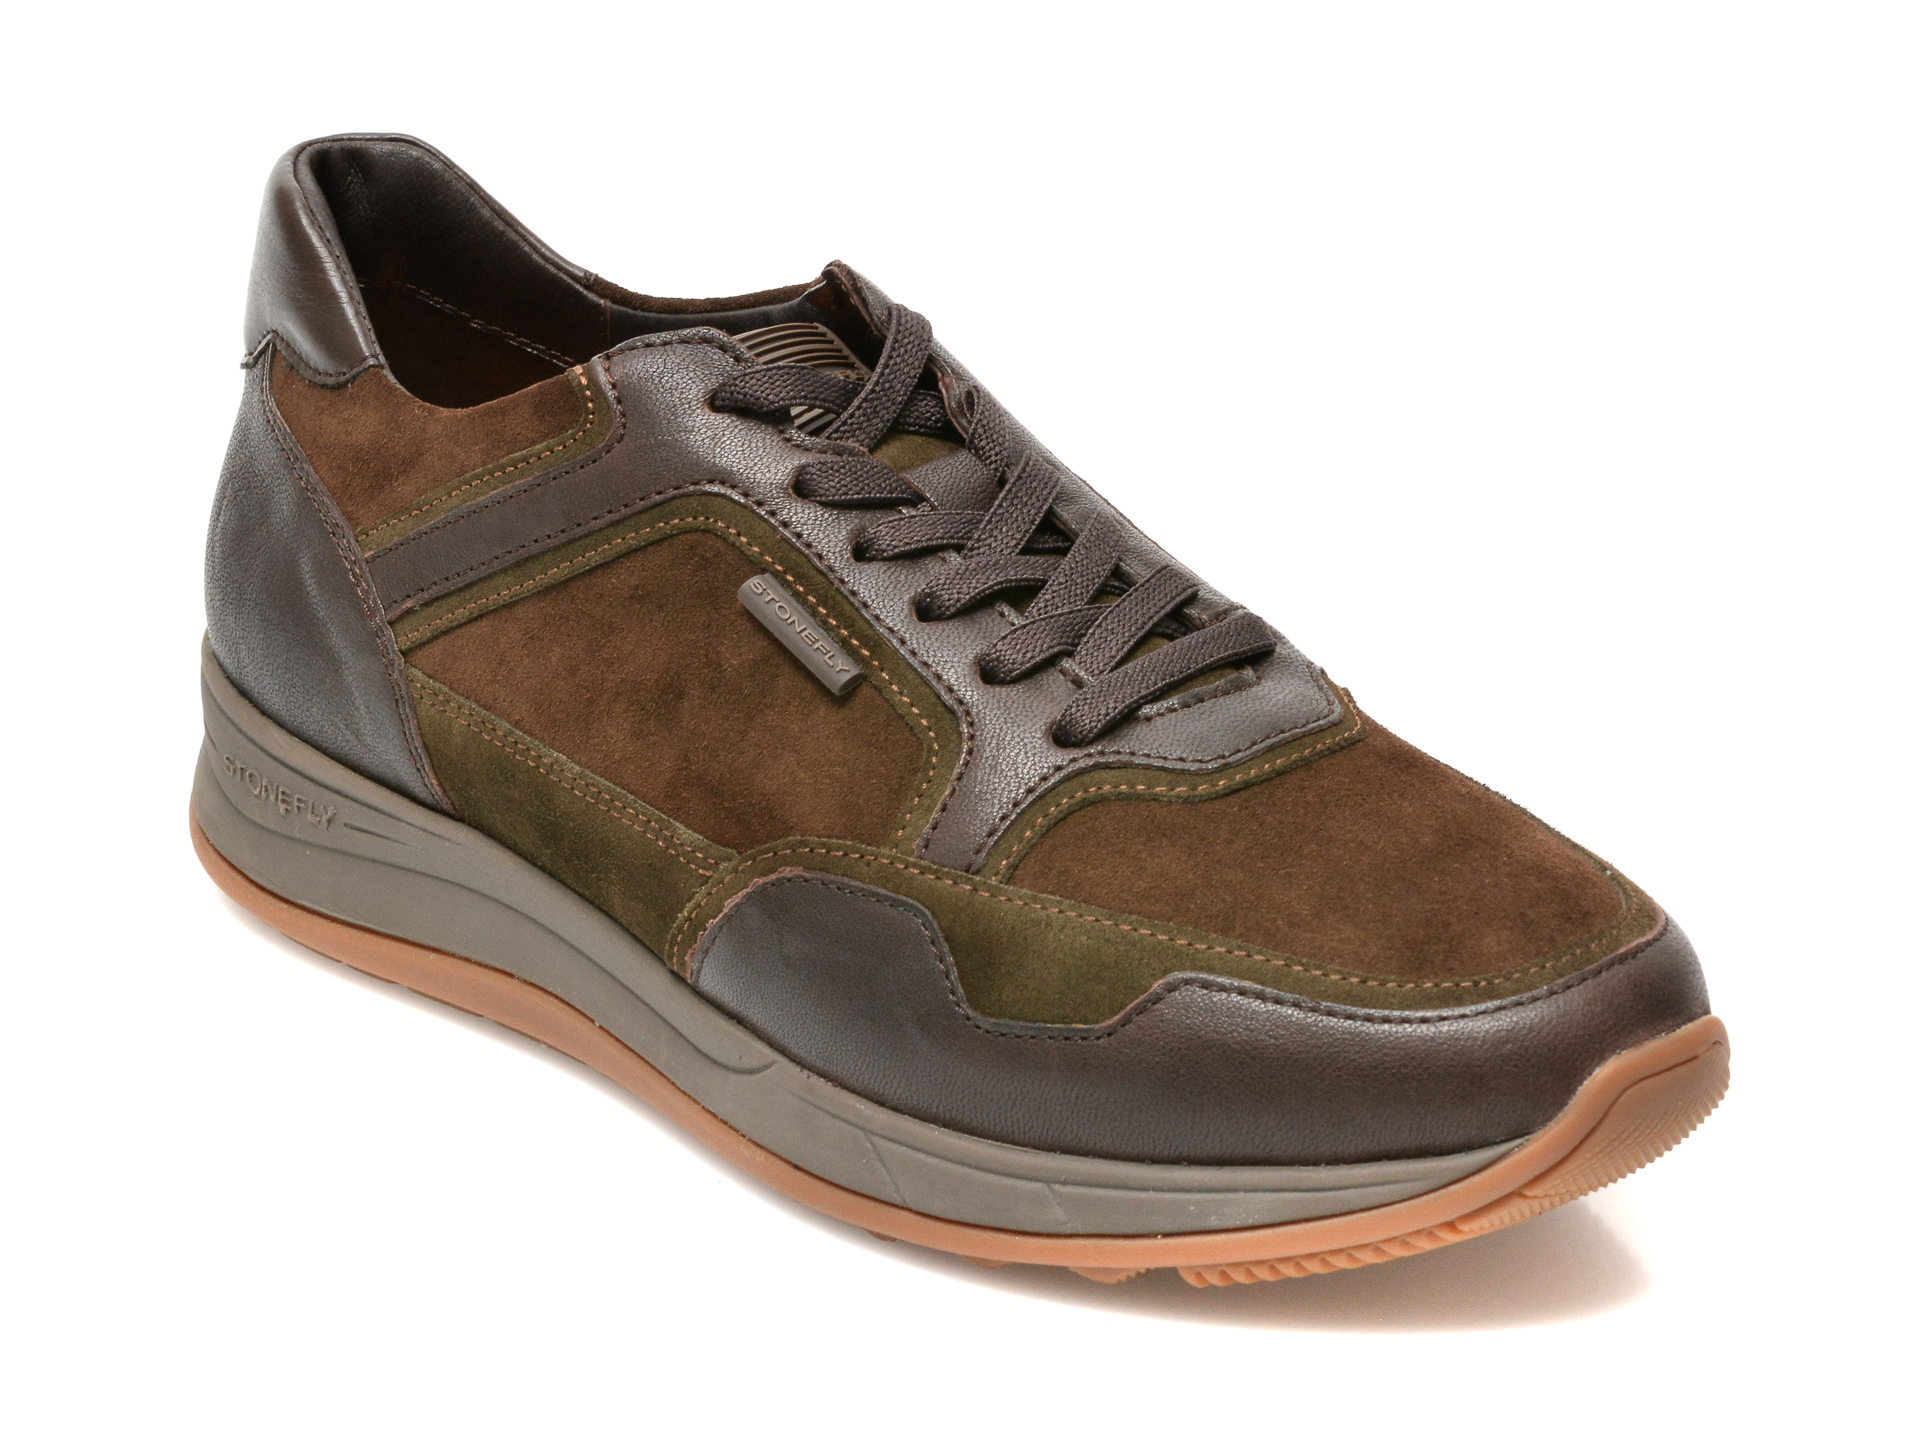 Pantofi STONEFLY maro, EDWARD6, din piele naturala Stonefly imagine reduceri